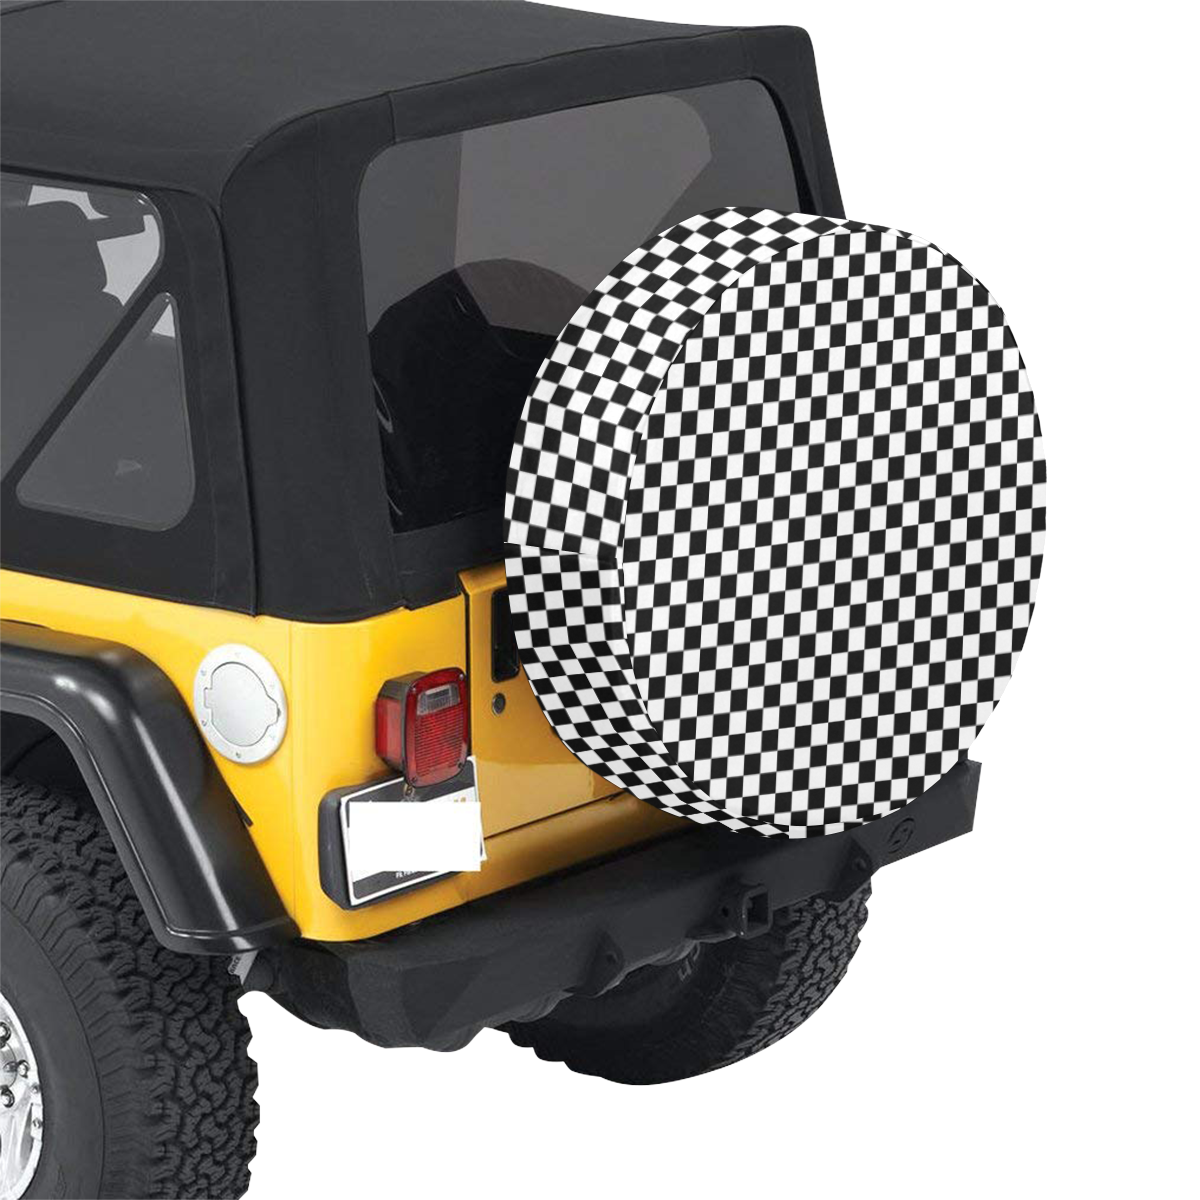 Checkerboard Black And White 32 Inch Spare Tire Cover